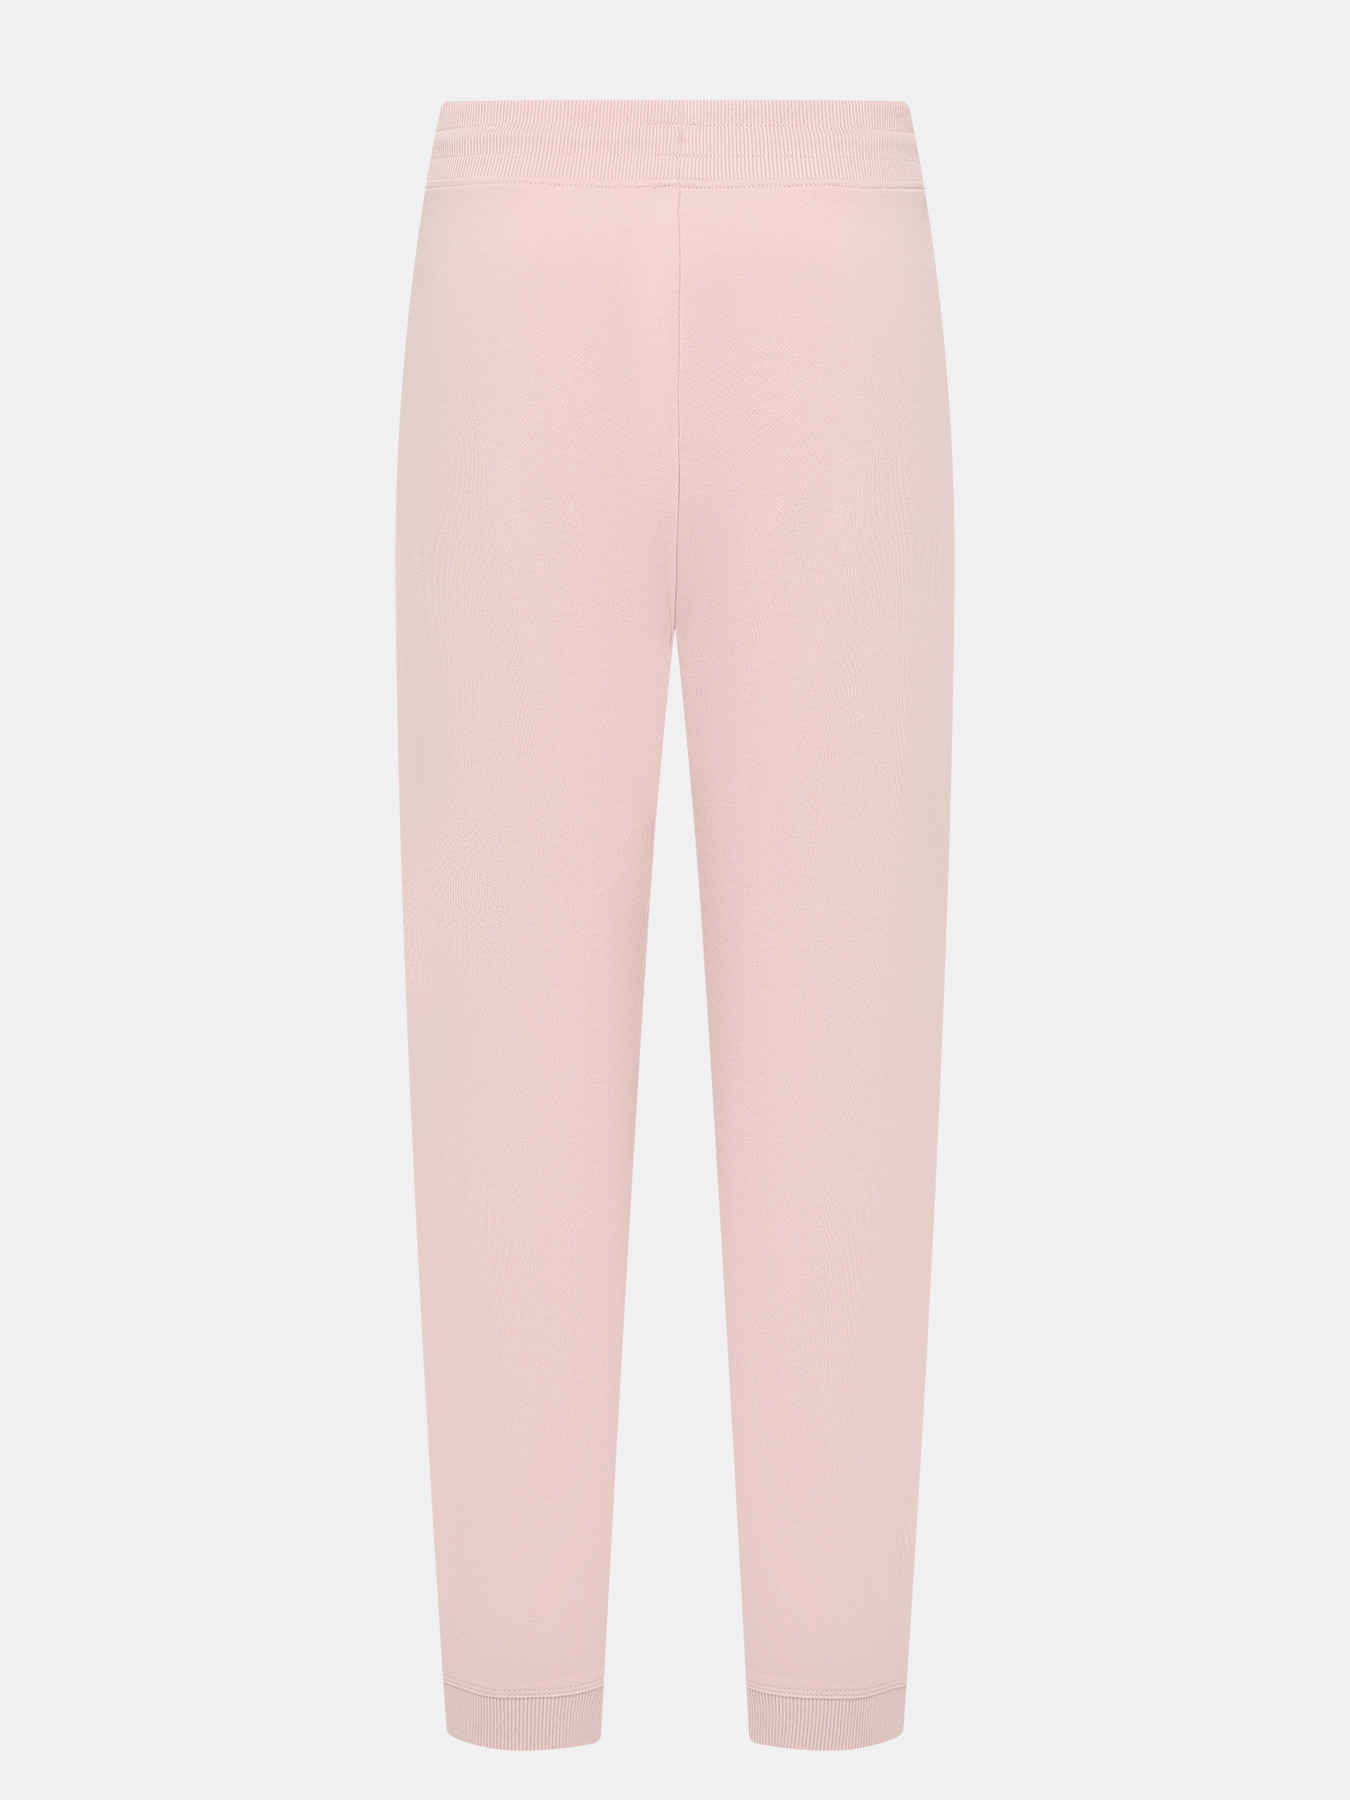 Спортивные брюки Dachibi redlabel HUGO 420594-041, цвет розовый, размер 40-42 - фото 3